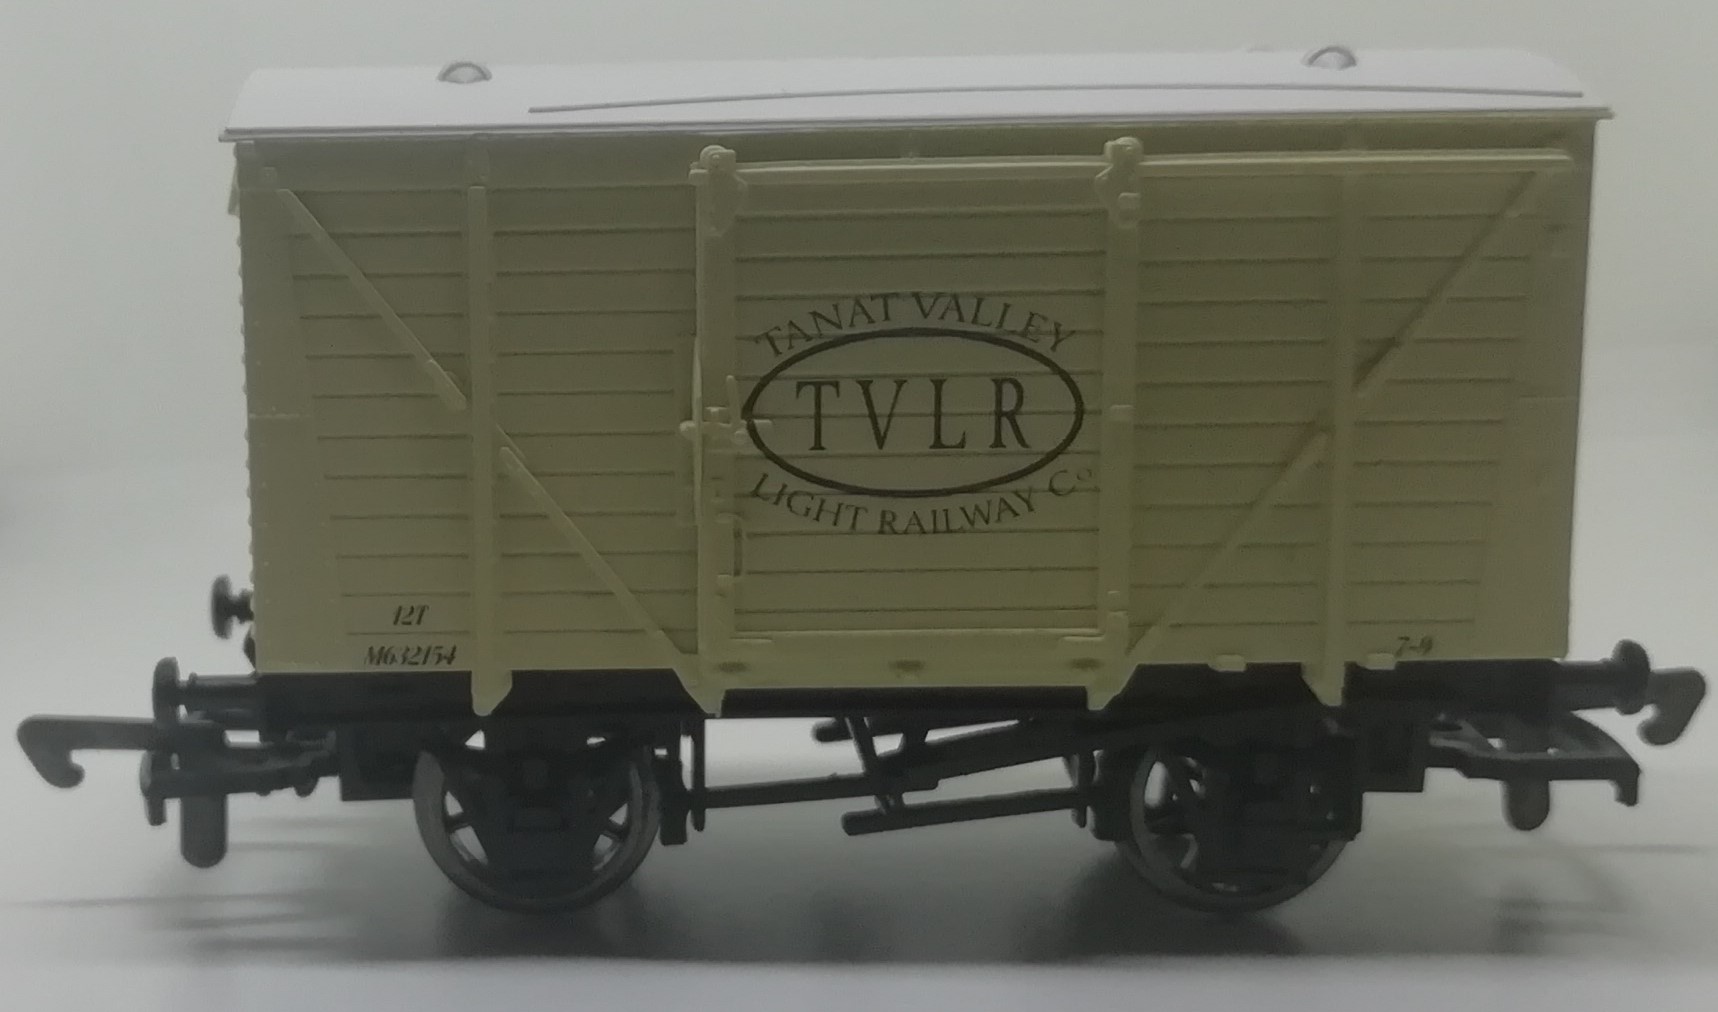 20ft Box Van with TVLR Logo - 1:76 Scale Model / 00 Gauge